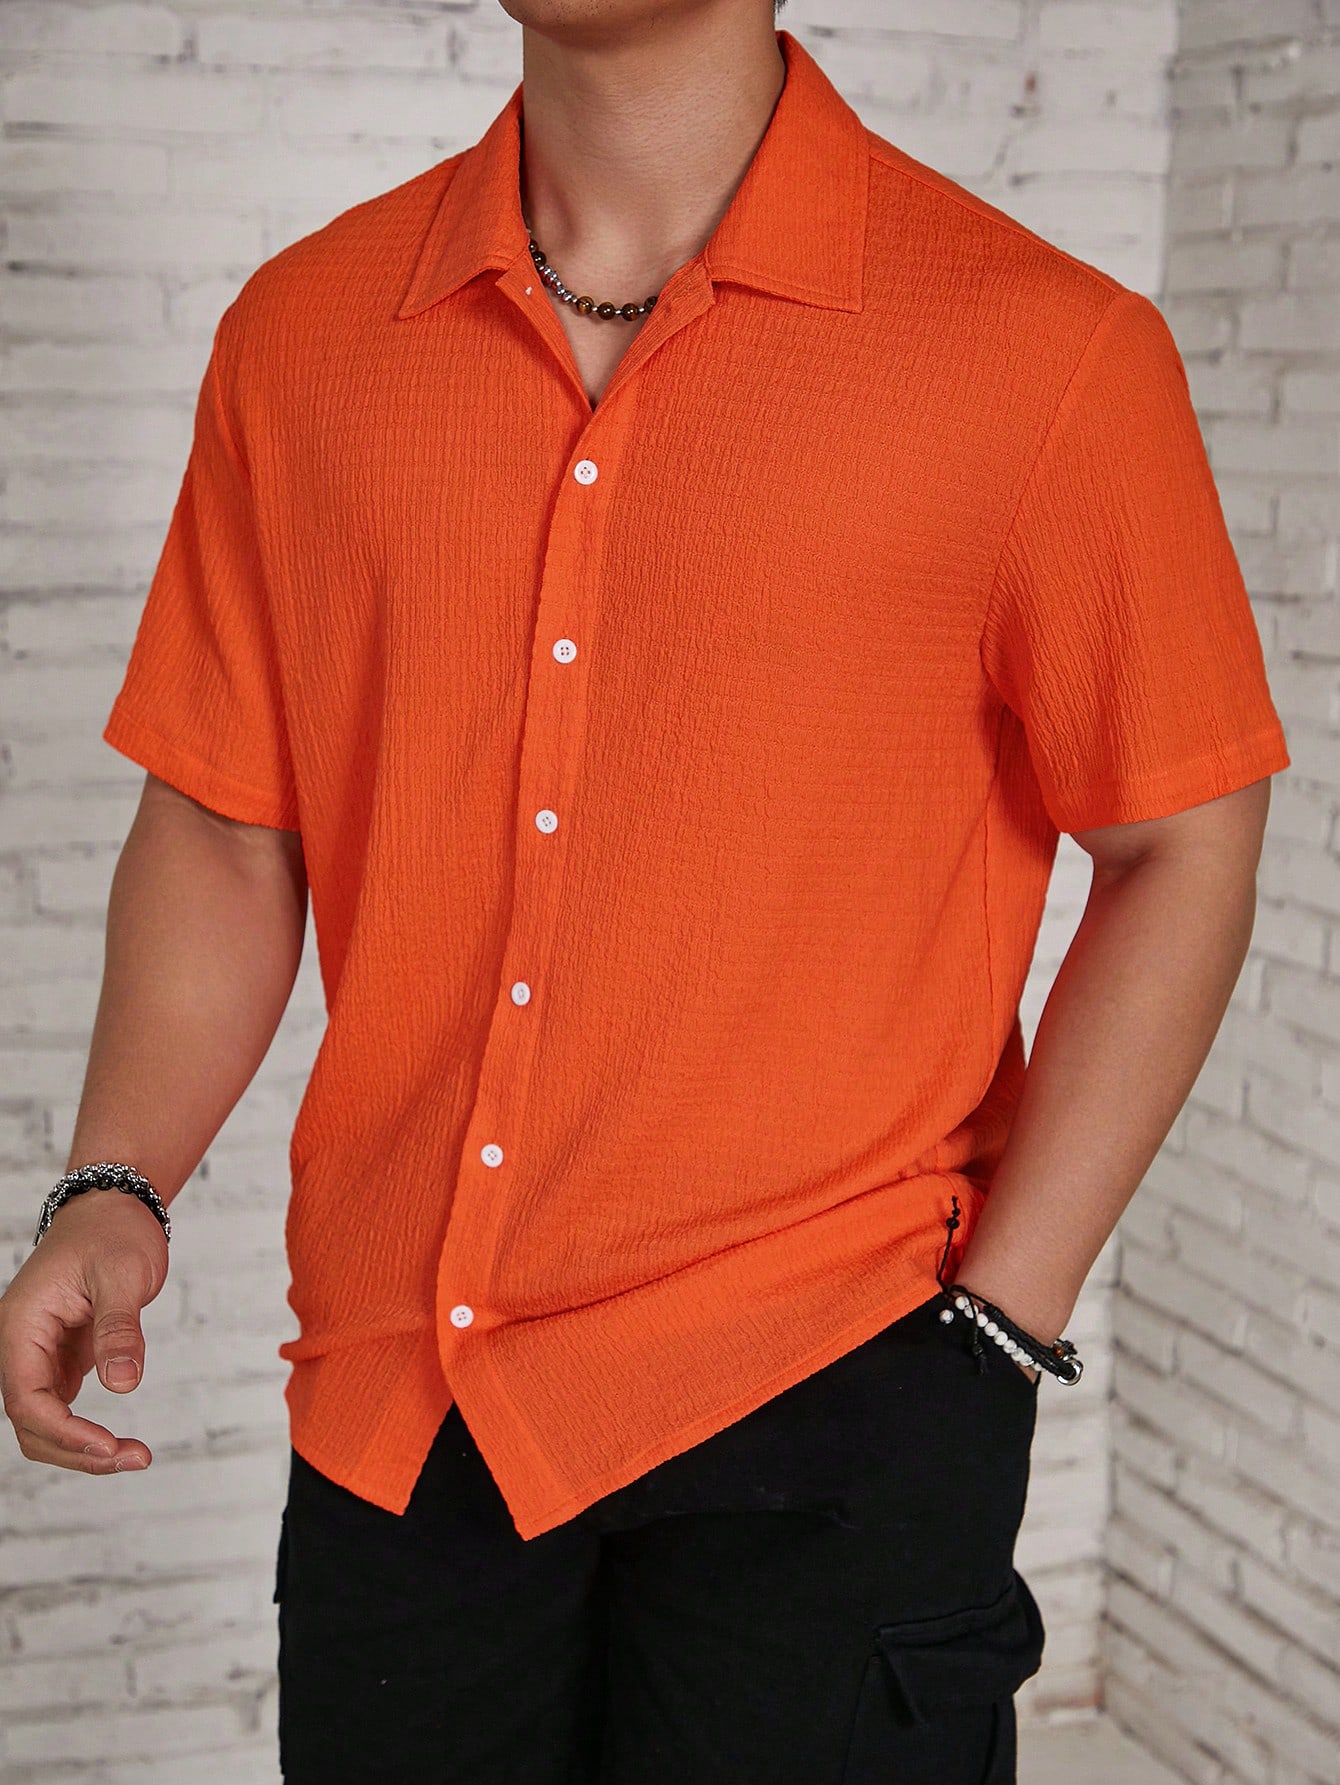 Мужская текстурированная рубашка на пуговицах с коротким рукавом Manfinity Homme, жженый апельсин мужская текстурированная рубашка с коротким рукавом manfinity homme на пуговицах спереди розовый